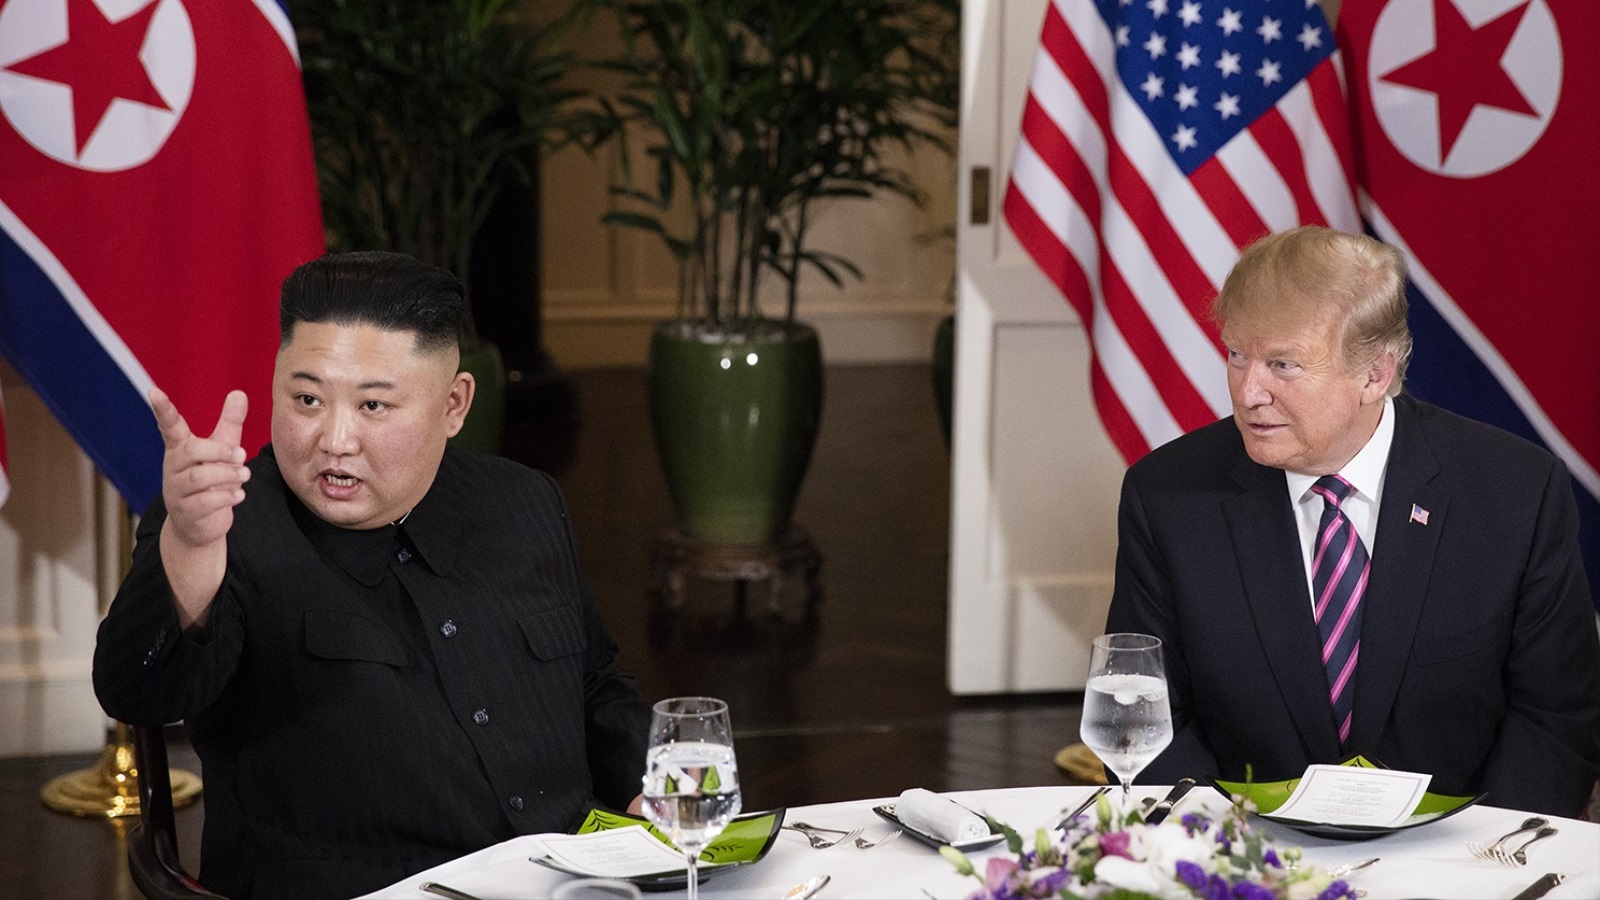 ‪زعيم كوريا الشمالية التقى الرئيس الأميركي دونالد ترامب في فبراير/شباط الماضي (الأناضول)‬ زعيم كوريا الشمالية التقى الرئيس الأميركي دونالد ترامب في فبراير/شباط الماضي (الأناضول)